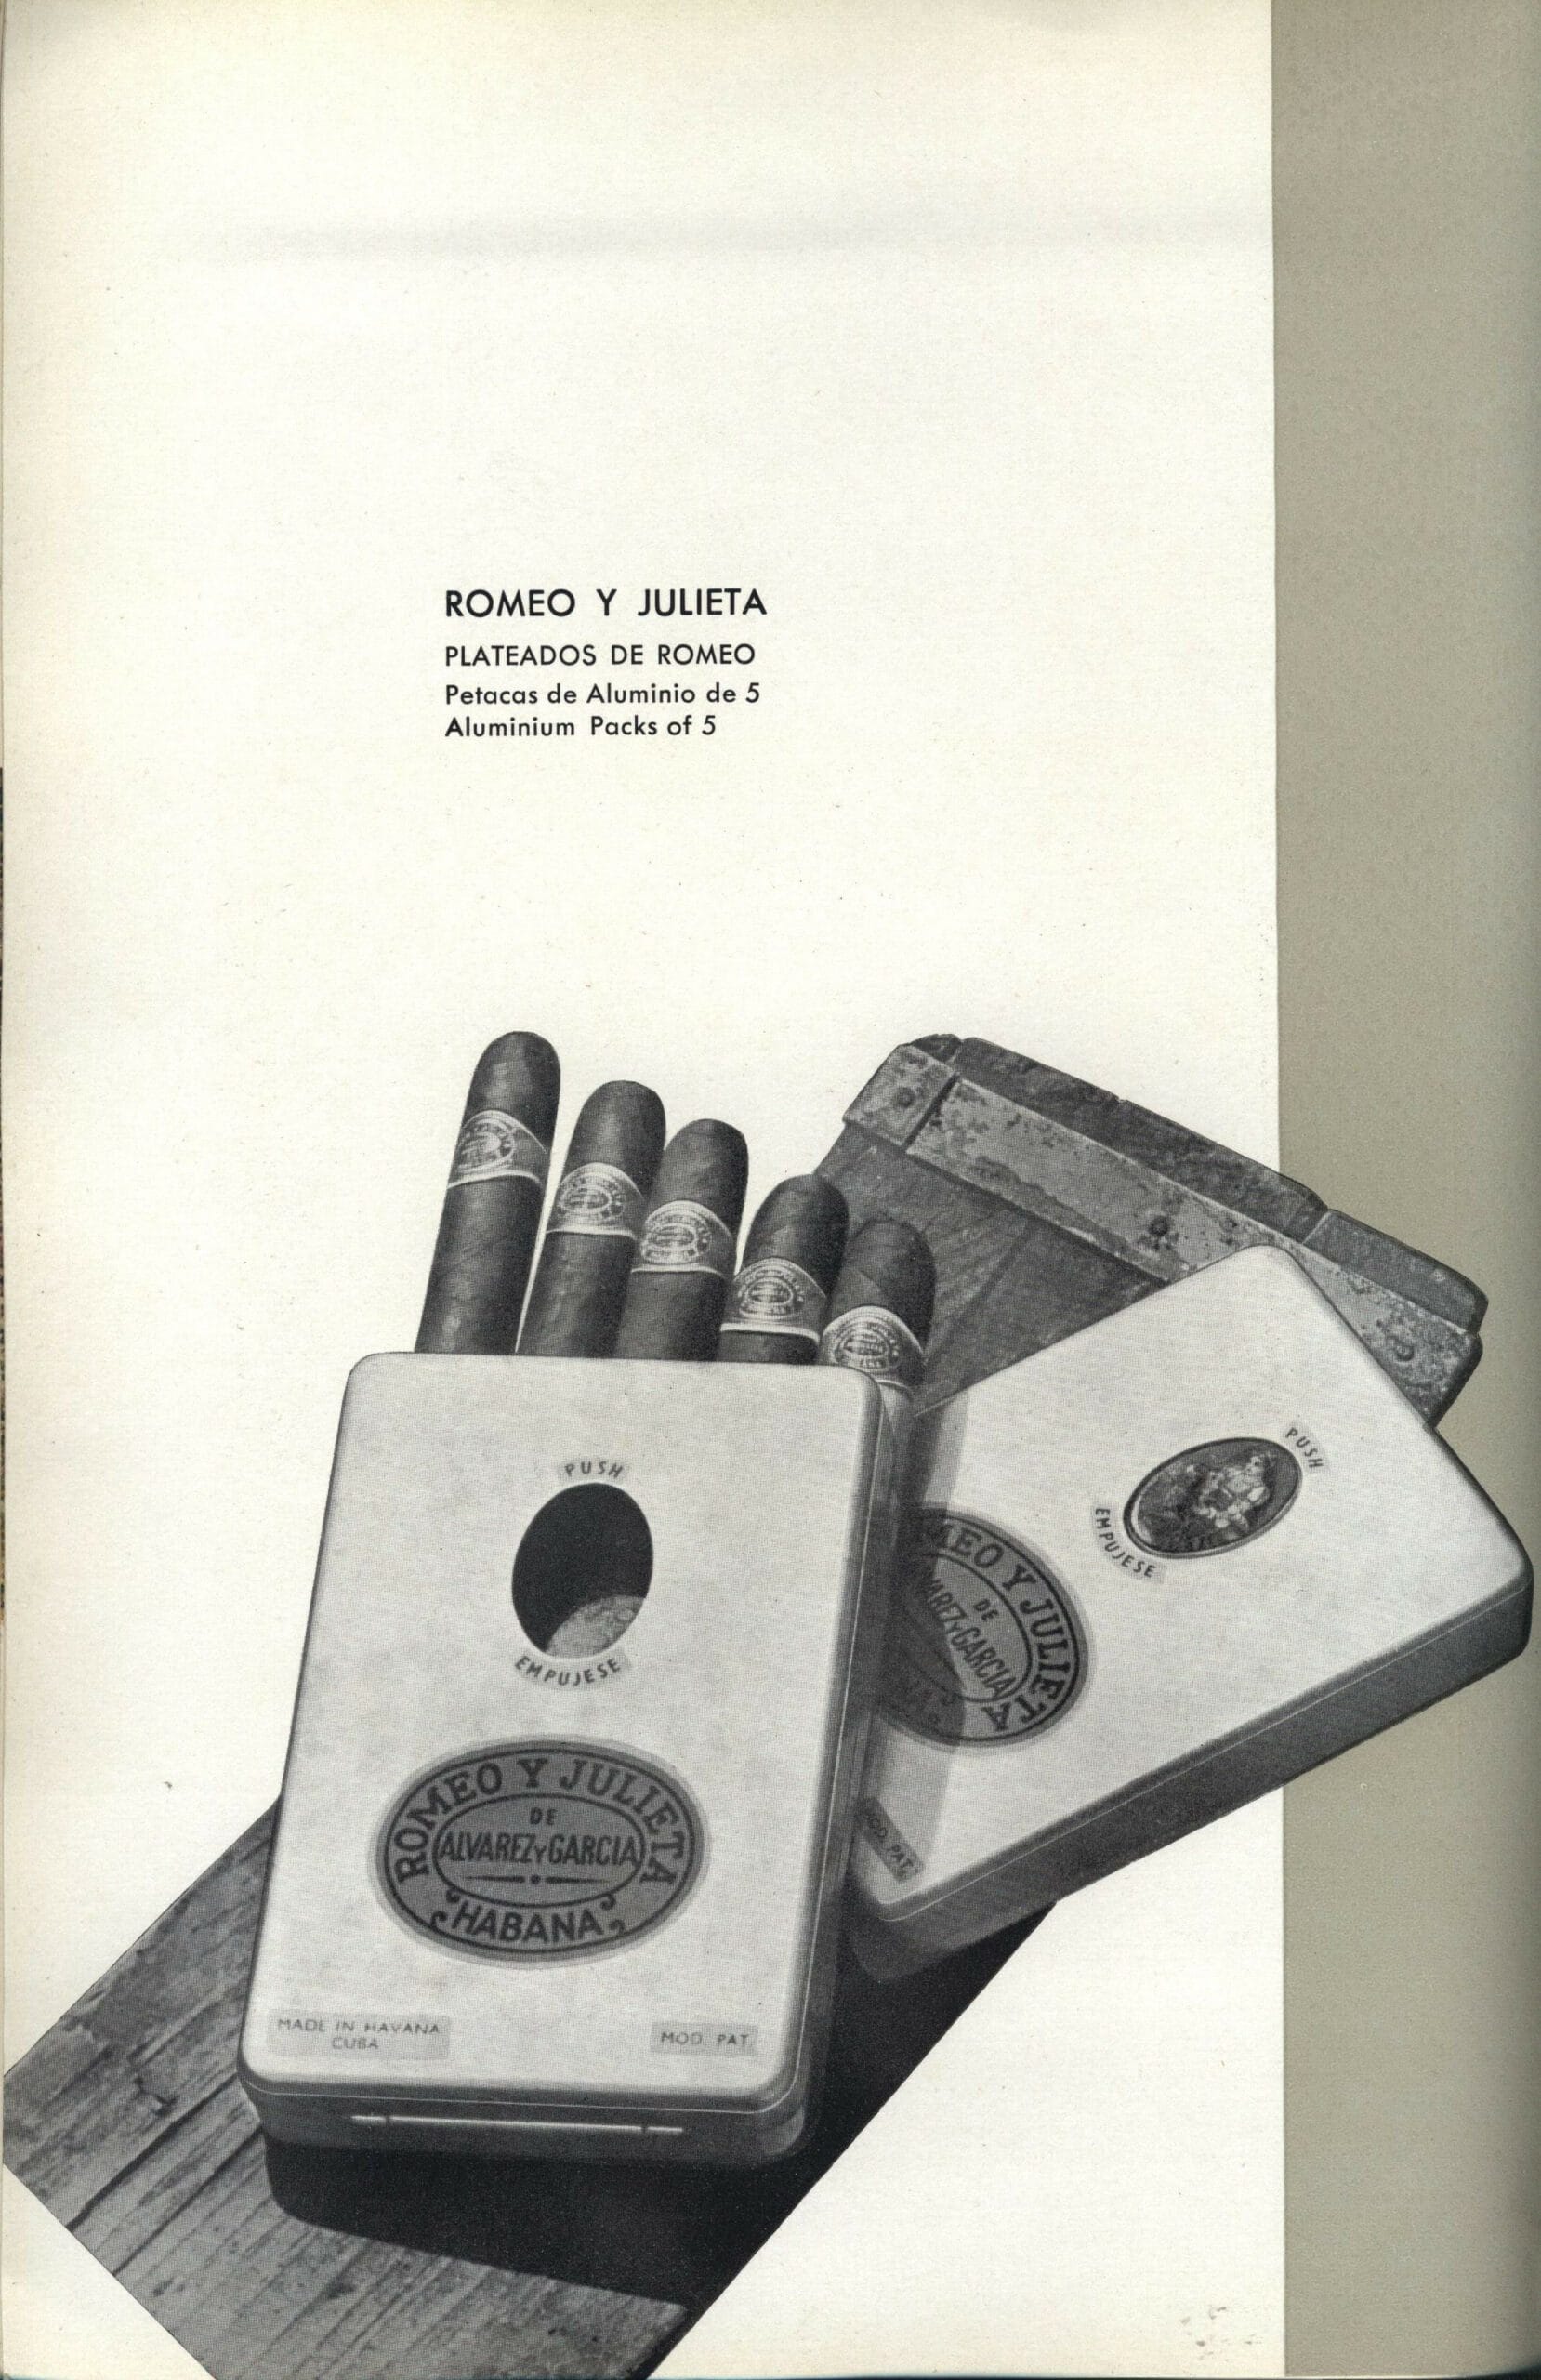 ROMEO & JULIETA - Plateados de Romeo - Aluminium pack - 1962 Cubatabaco